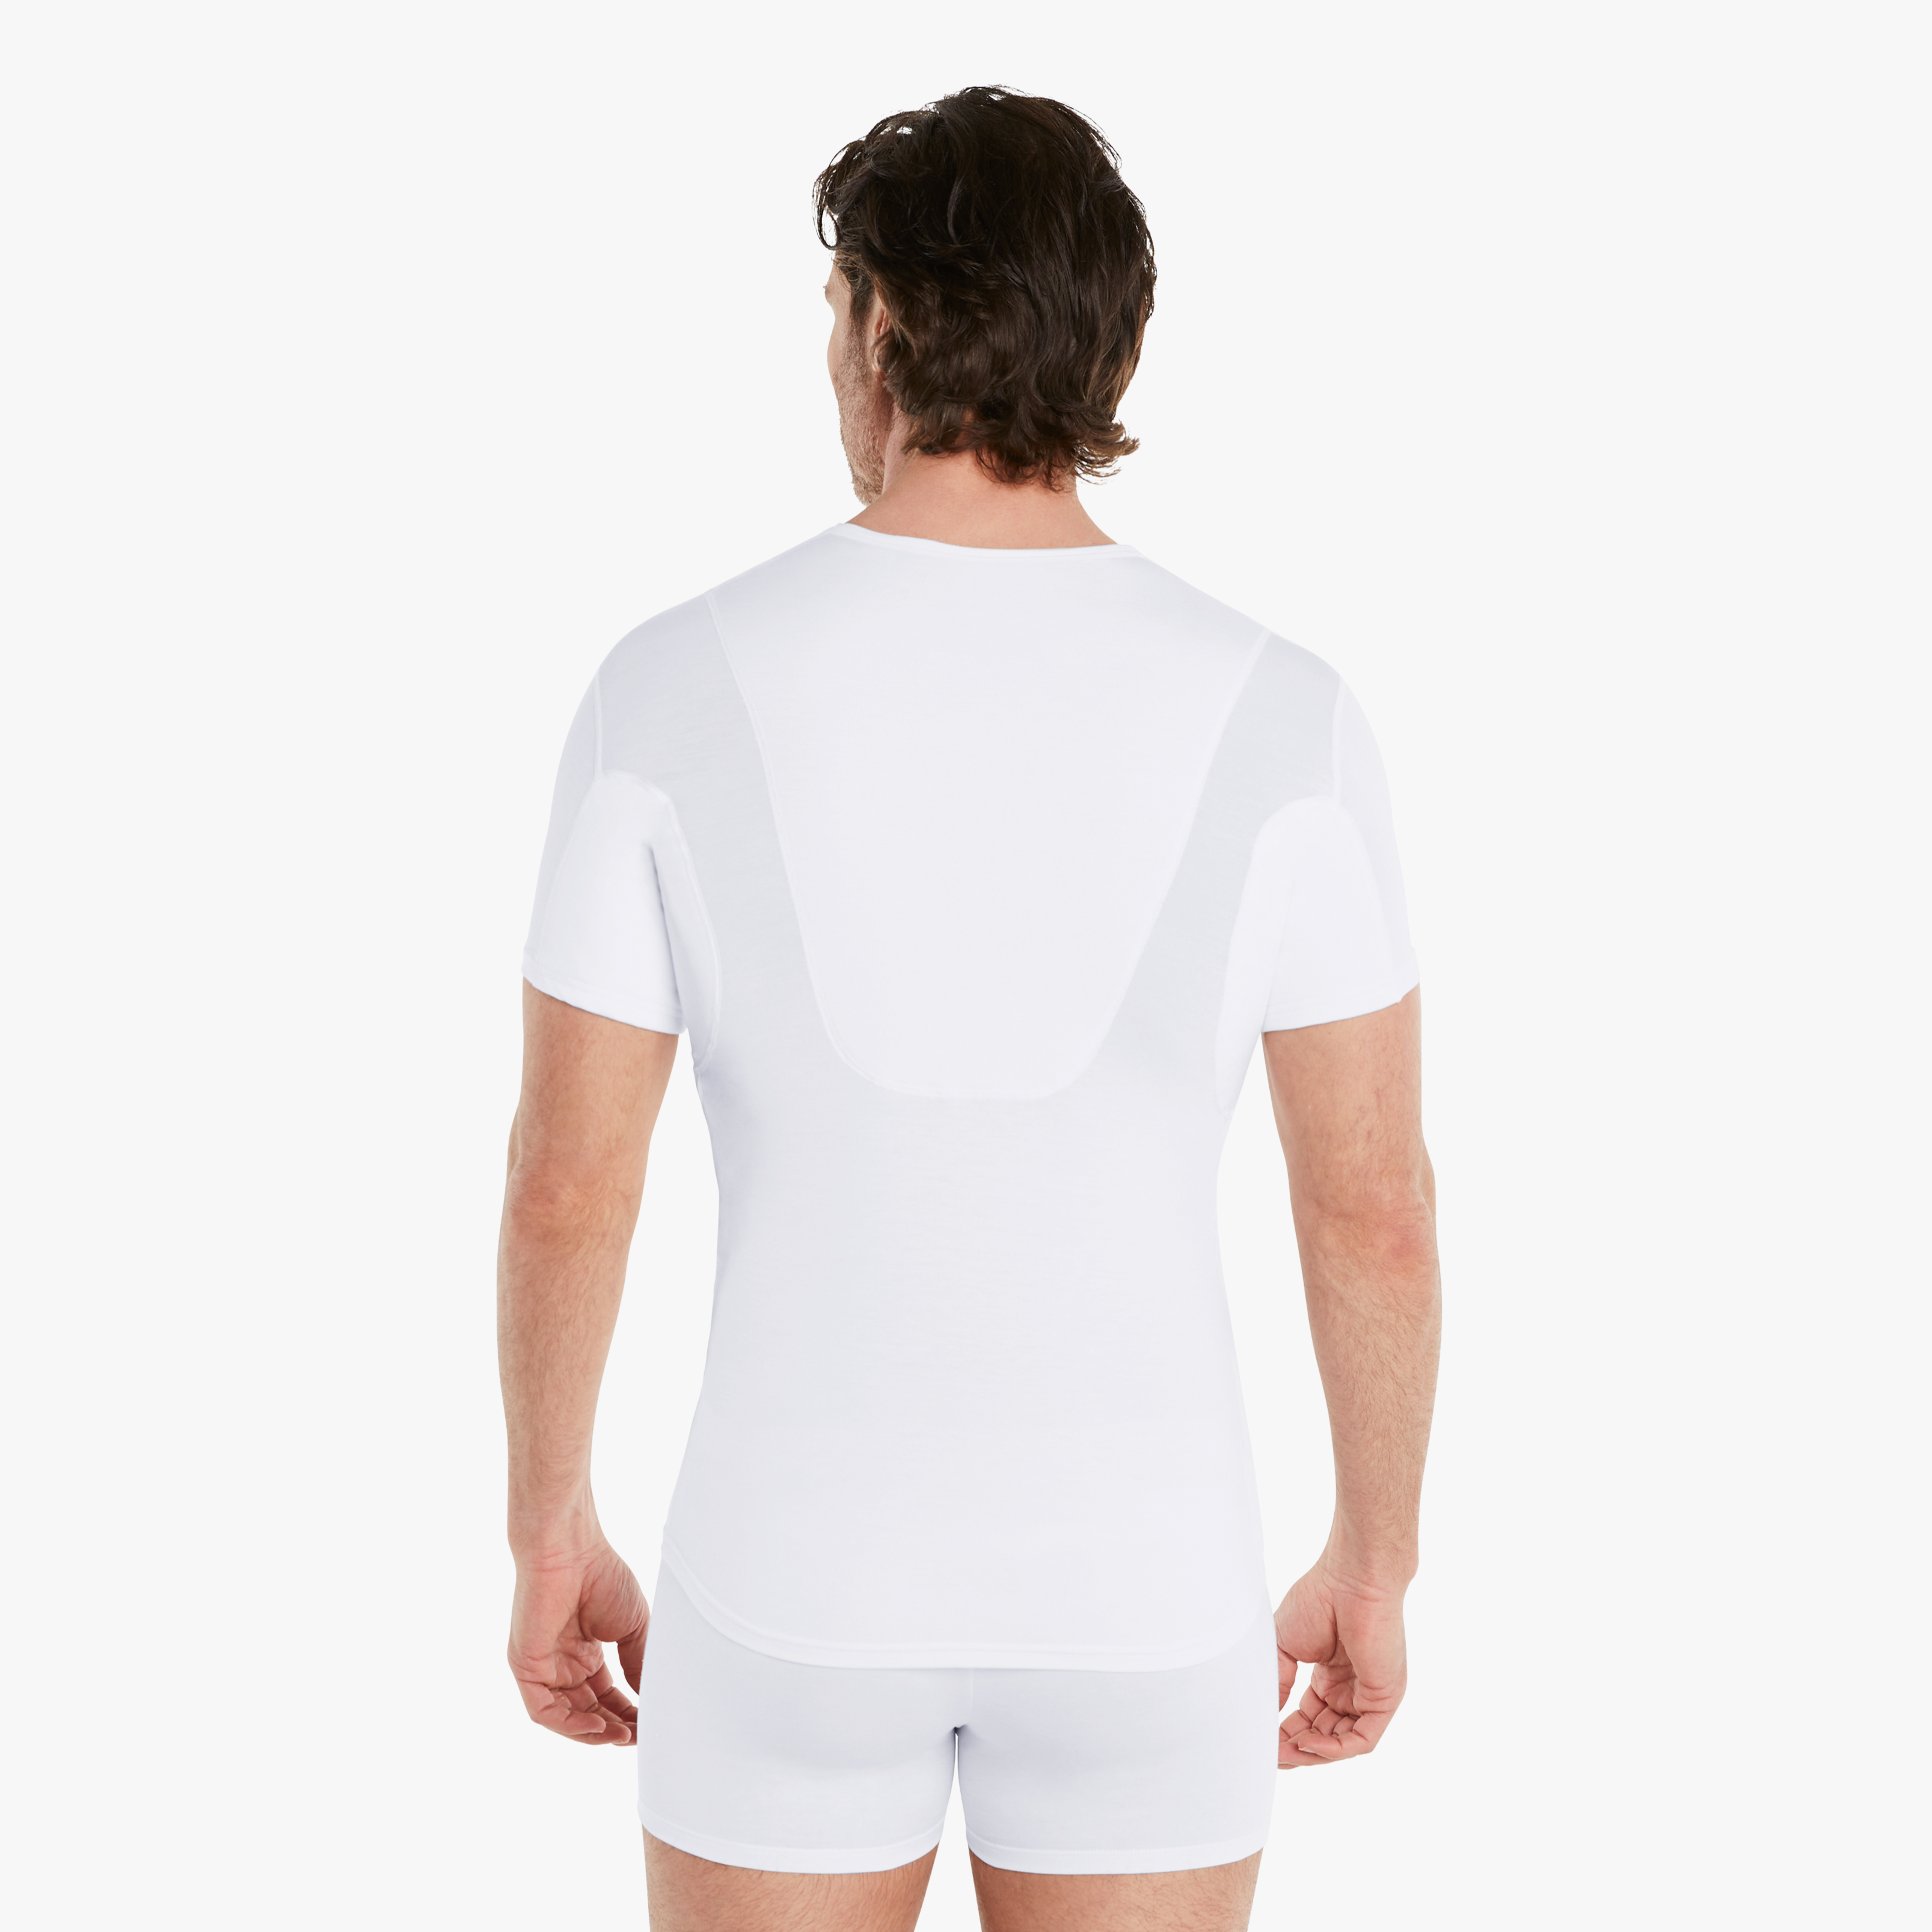 Mann in weißem Anti-Schweiß Unterhemd Herren mit Rückeneinlage, Größe M. 100% Schutz vor Schweißflecken, Drywear Shirt mit extra-saugfähiger Schicht. #farbe_weiß